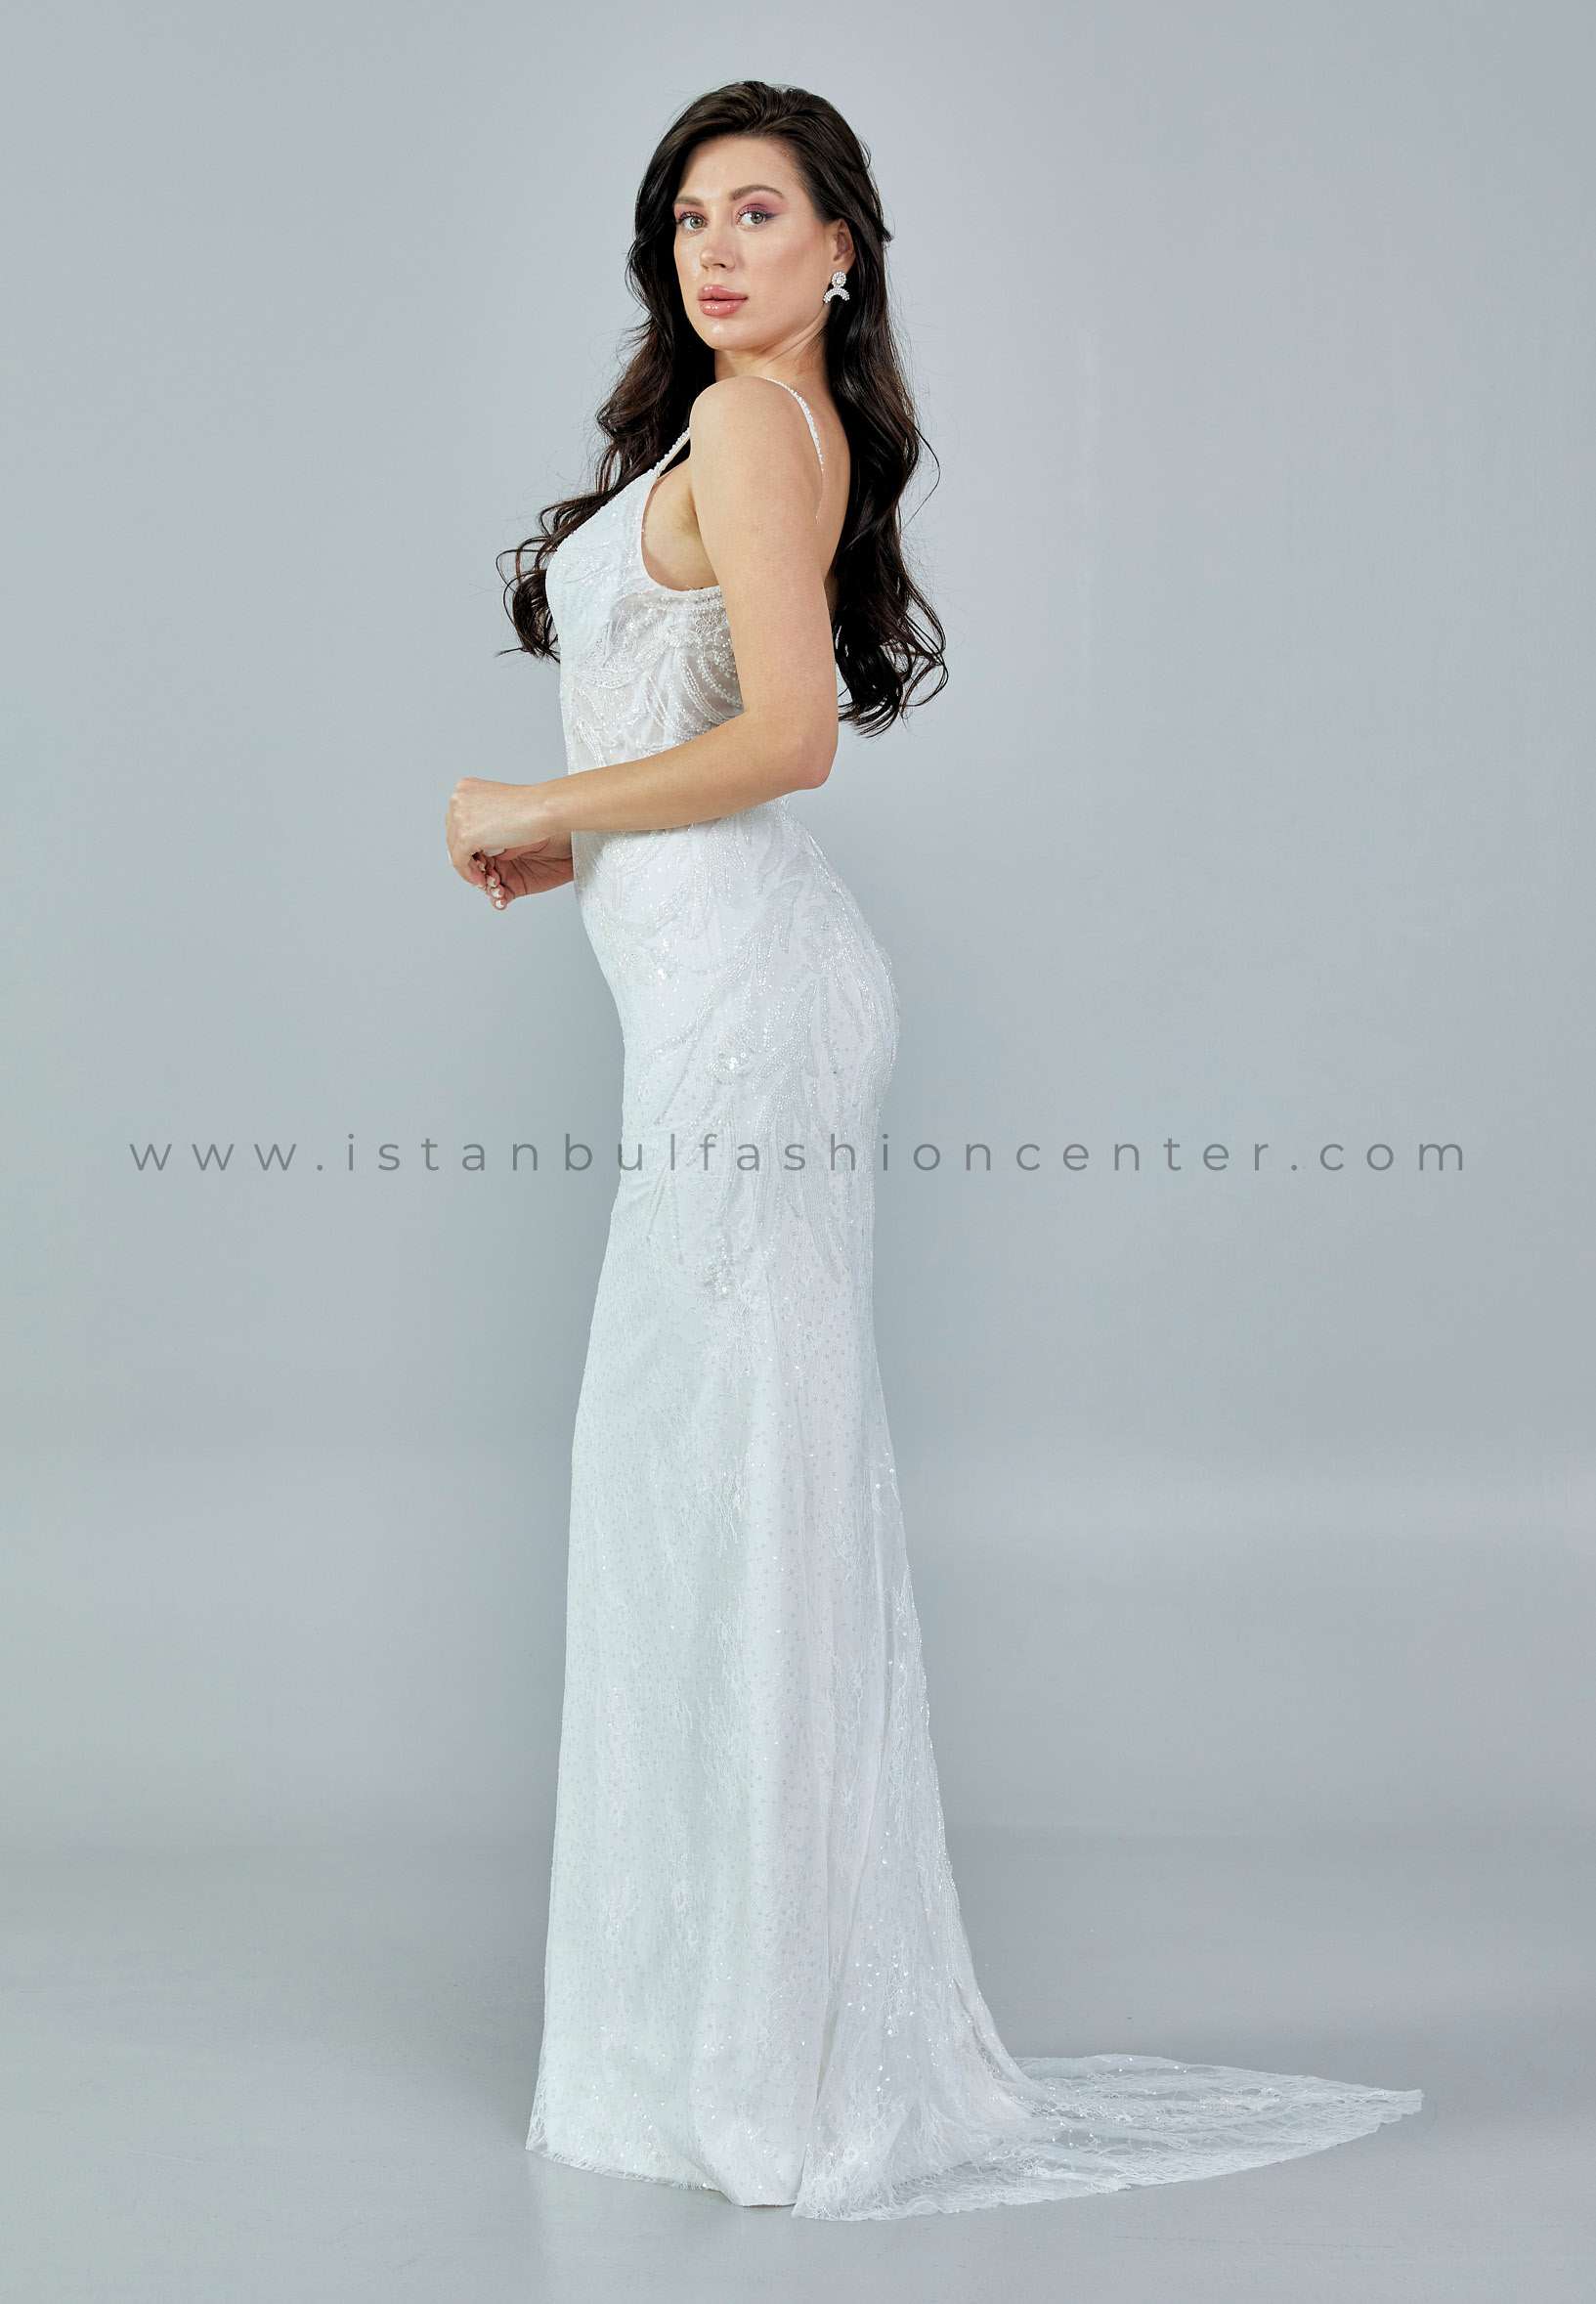 NALANS BRIDAL بلا أكمام الطويلة جدا لايس حجم اضافي أبيض فستان عرس ملكي  Nlsps23105-bkib